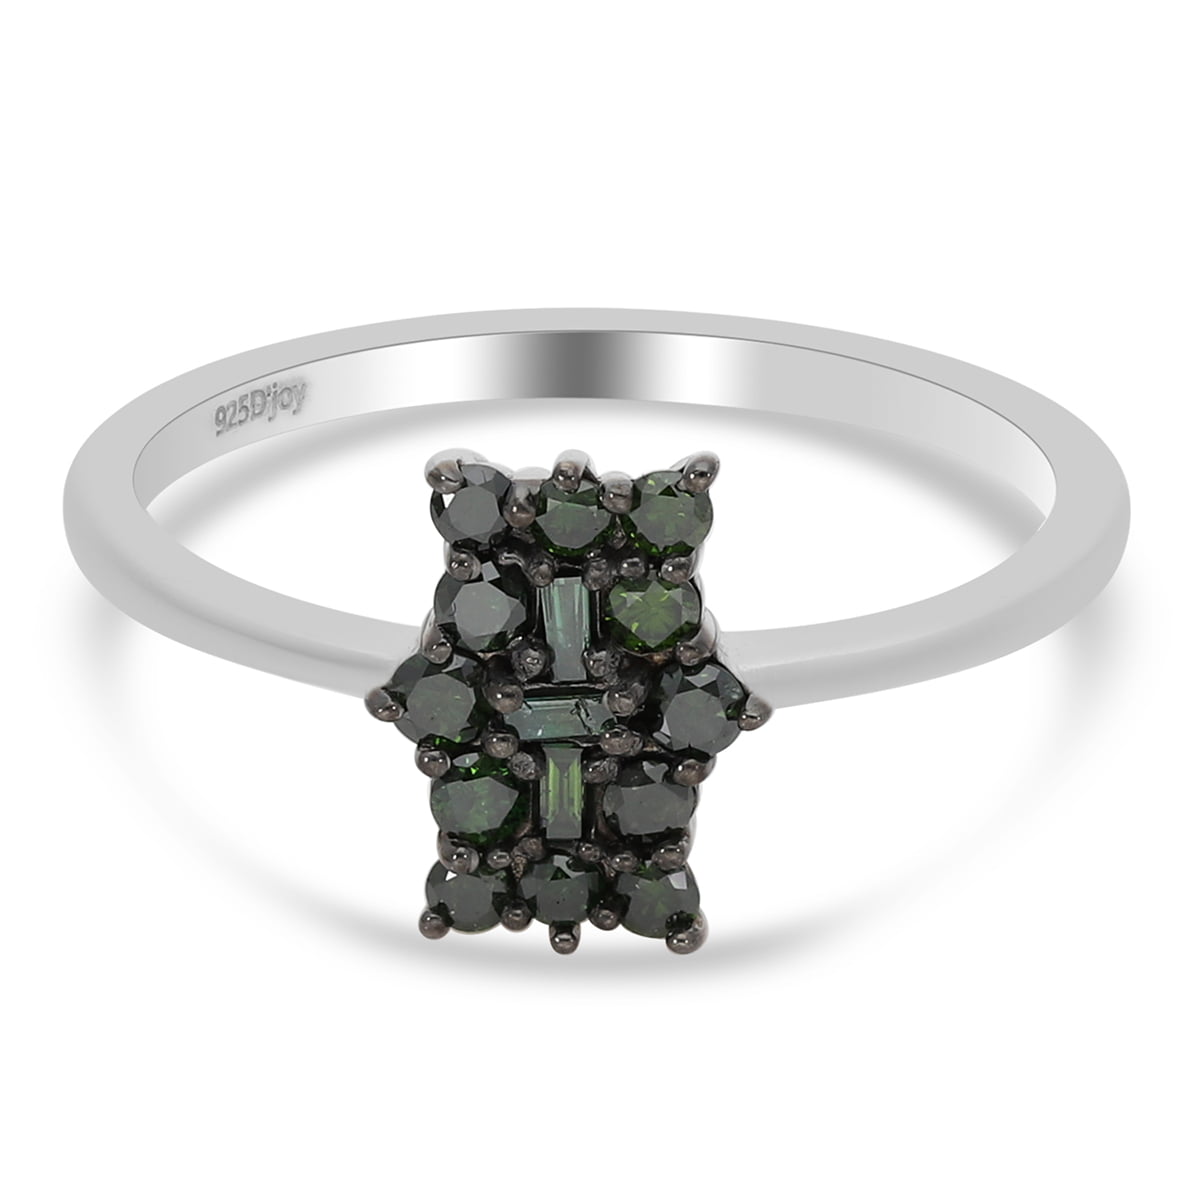 Details about   Natural Opal Gemstone Handmade 925 Sterling Silver Designer Ring Best Gift 